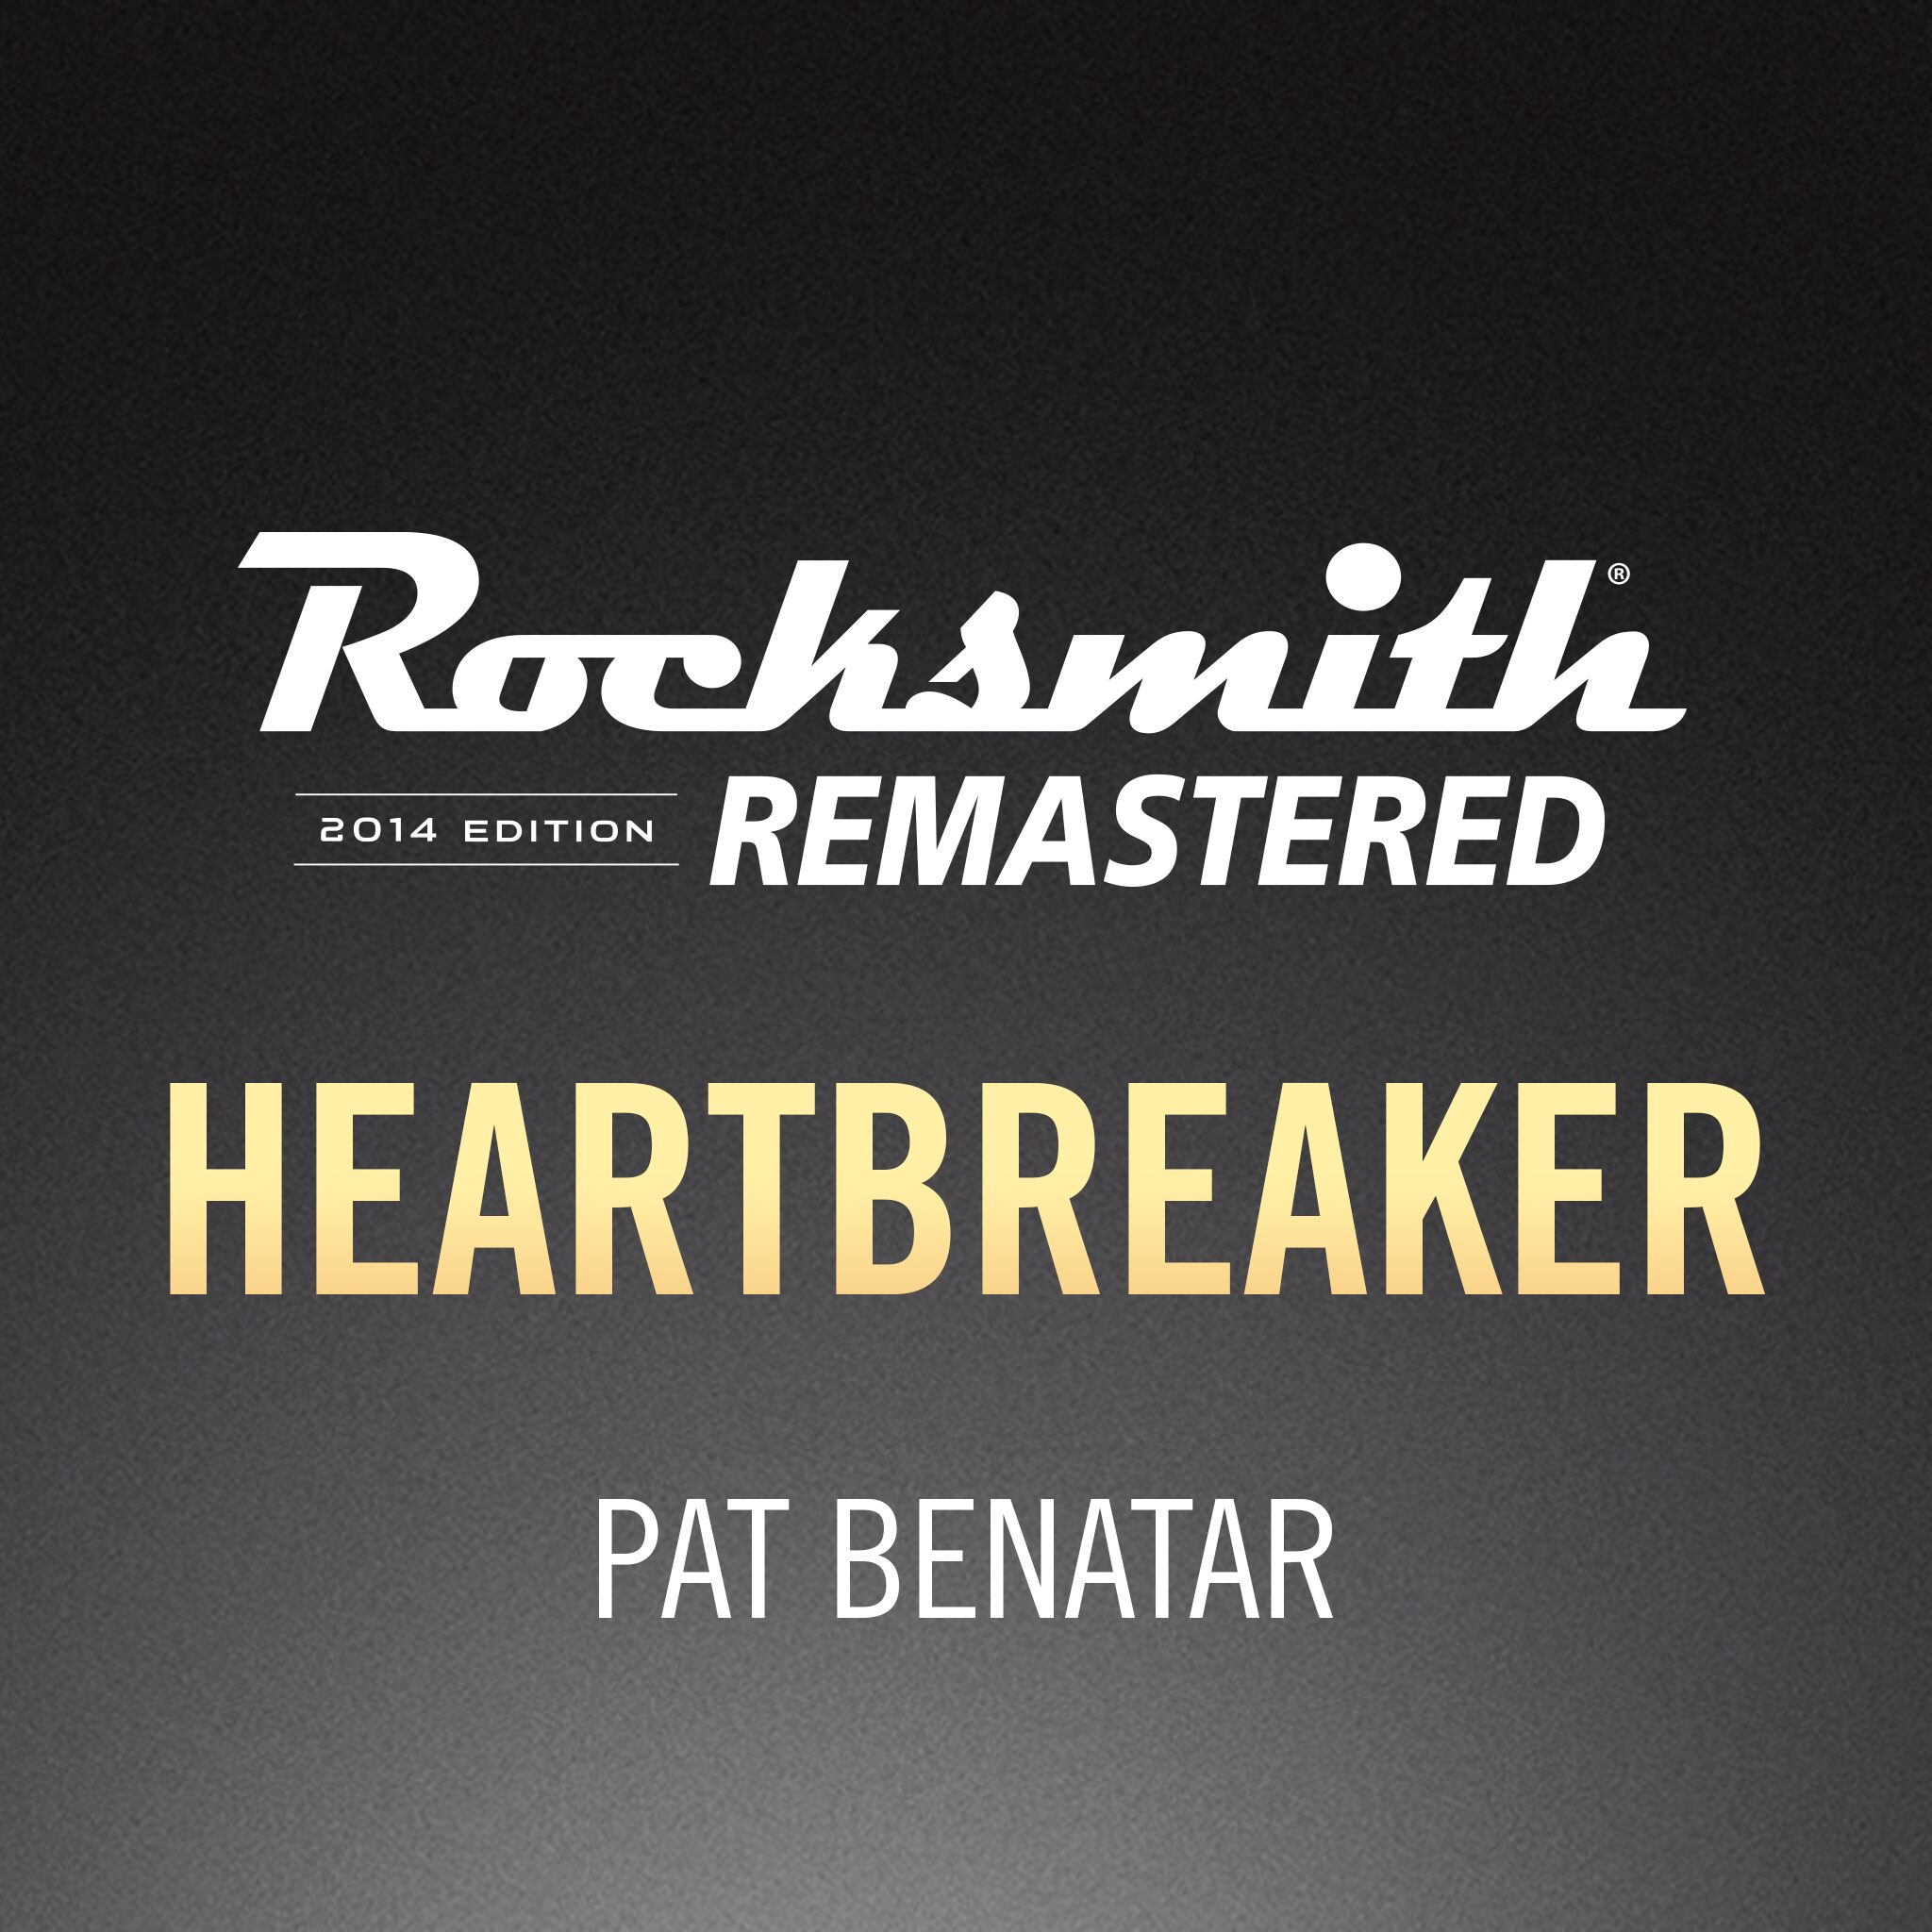 Heartbreaker (Pat Benatar Song). Pat benatar heartbreaker